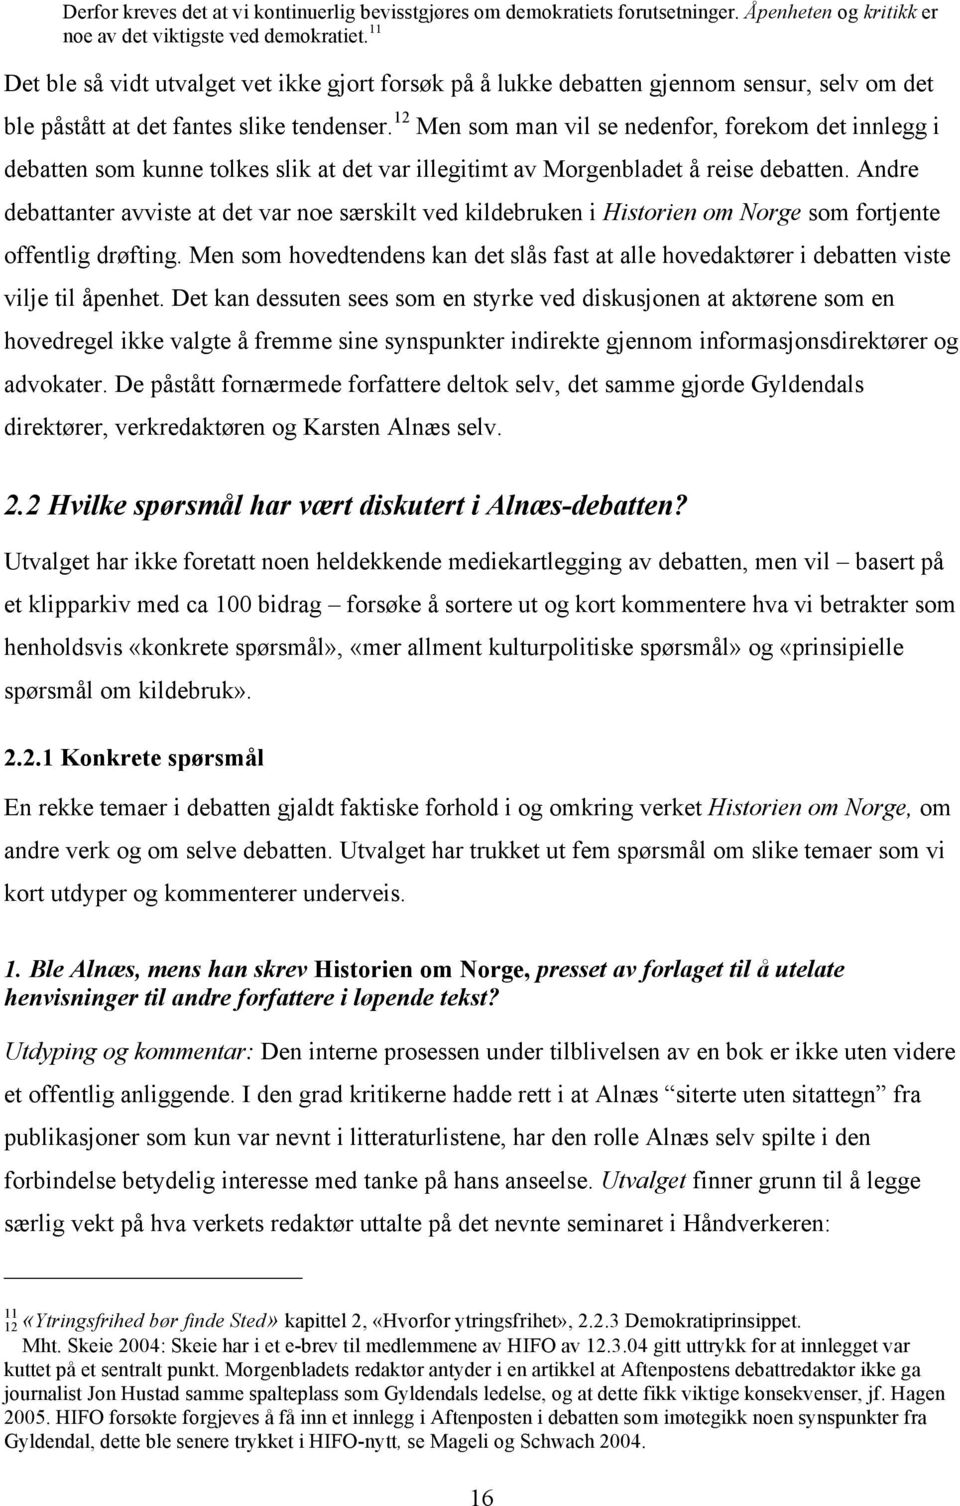 12 Men som man vil se nedenfor, forekom det innlegg i debatten som kunne tolkes slik at det var illegitimt av Morgenbladet å reise debatten.